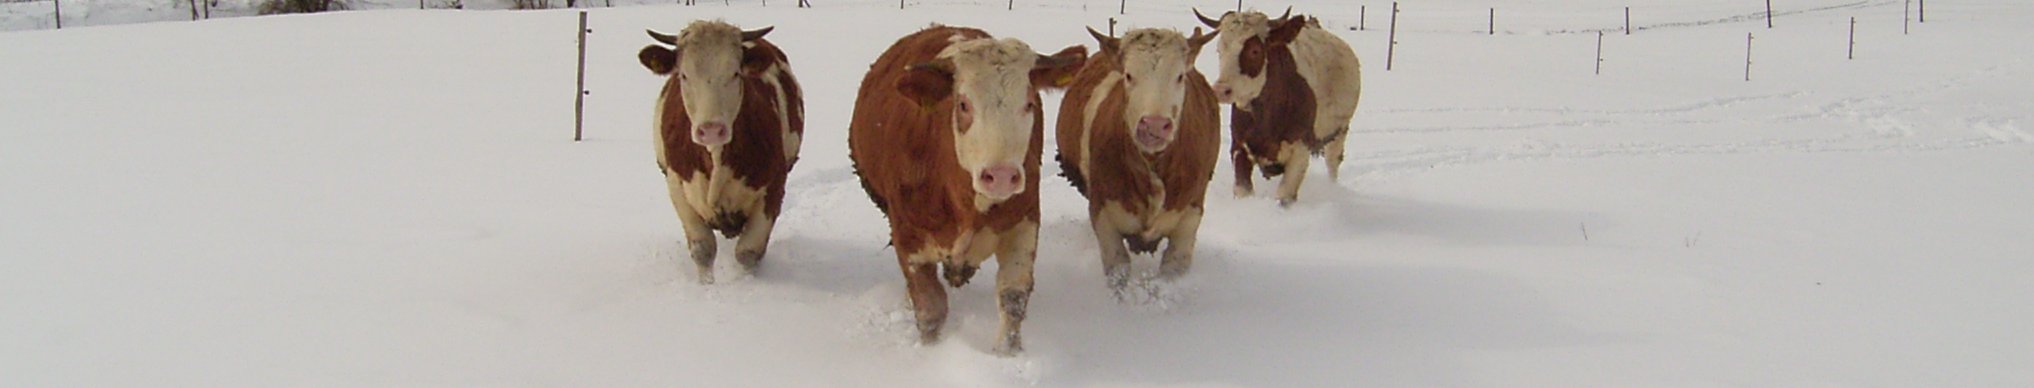 Rinder im Schnee; Bild A. Bader LEL